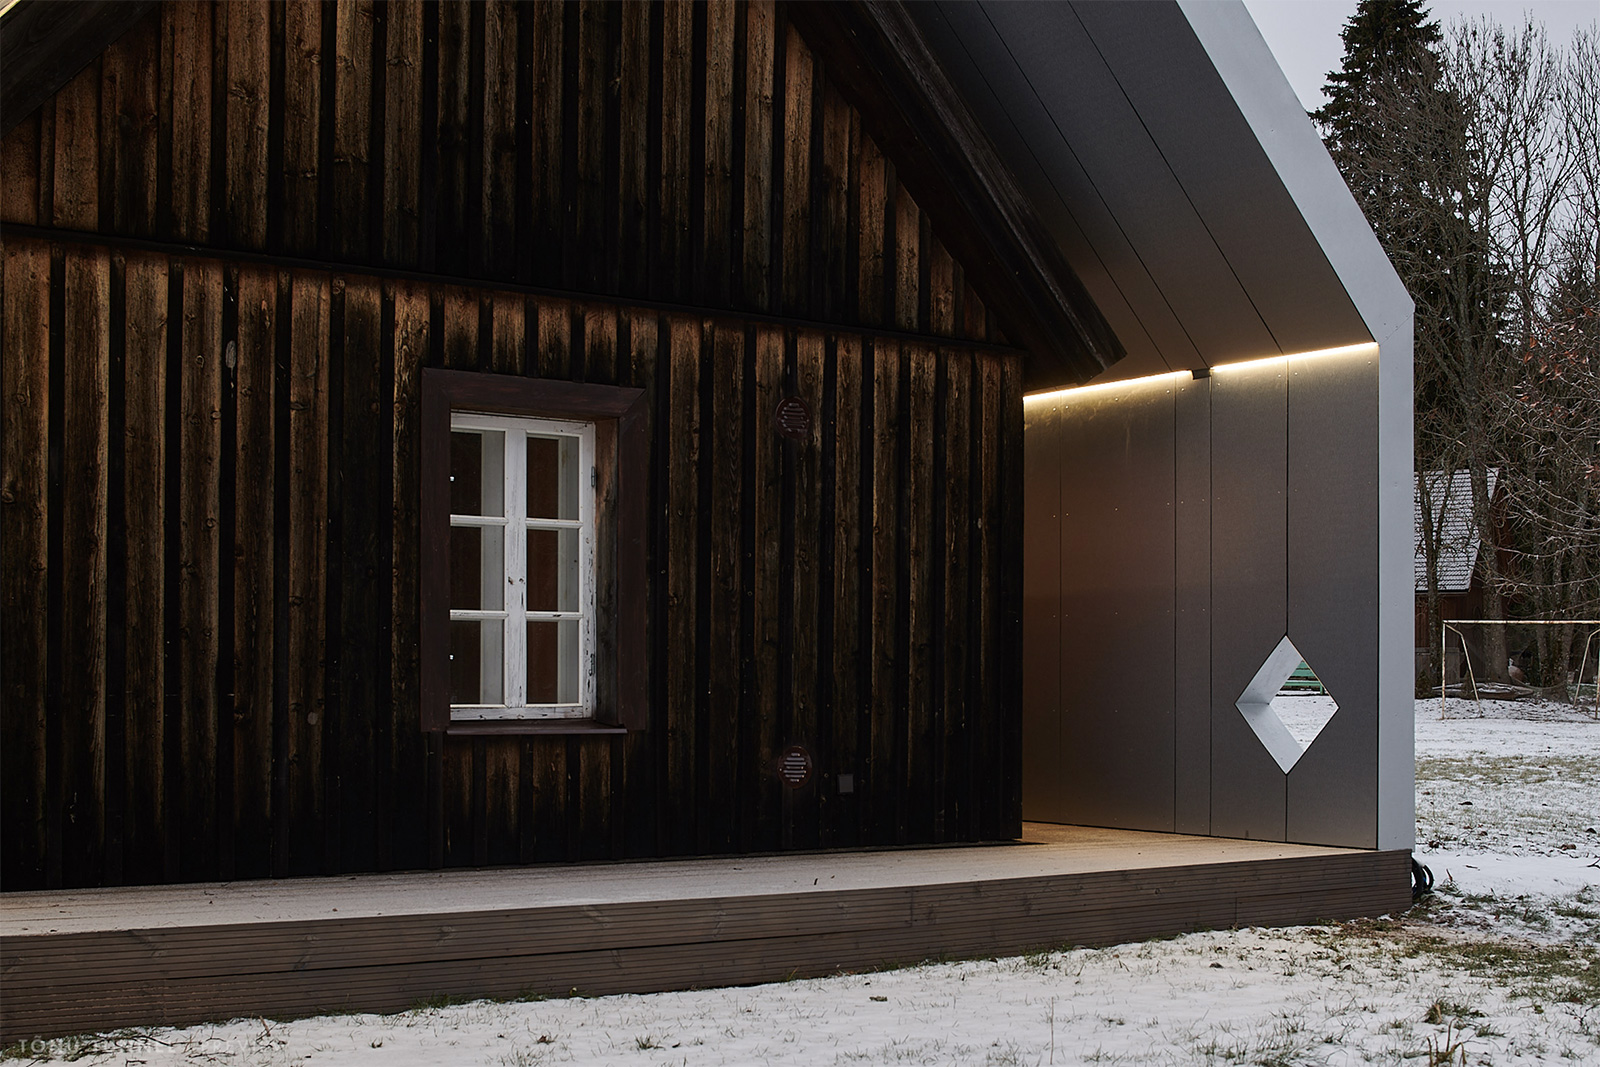 This zig-zag sauna cuts a sharp silhouette in Estonia